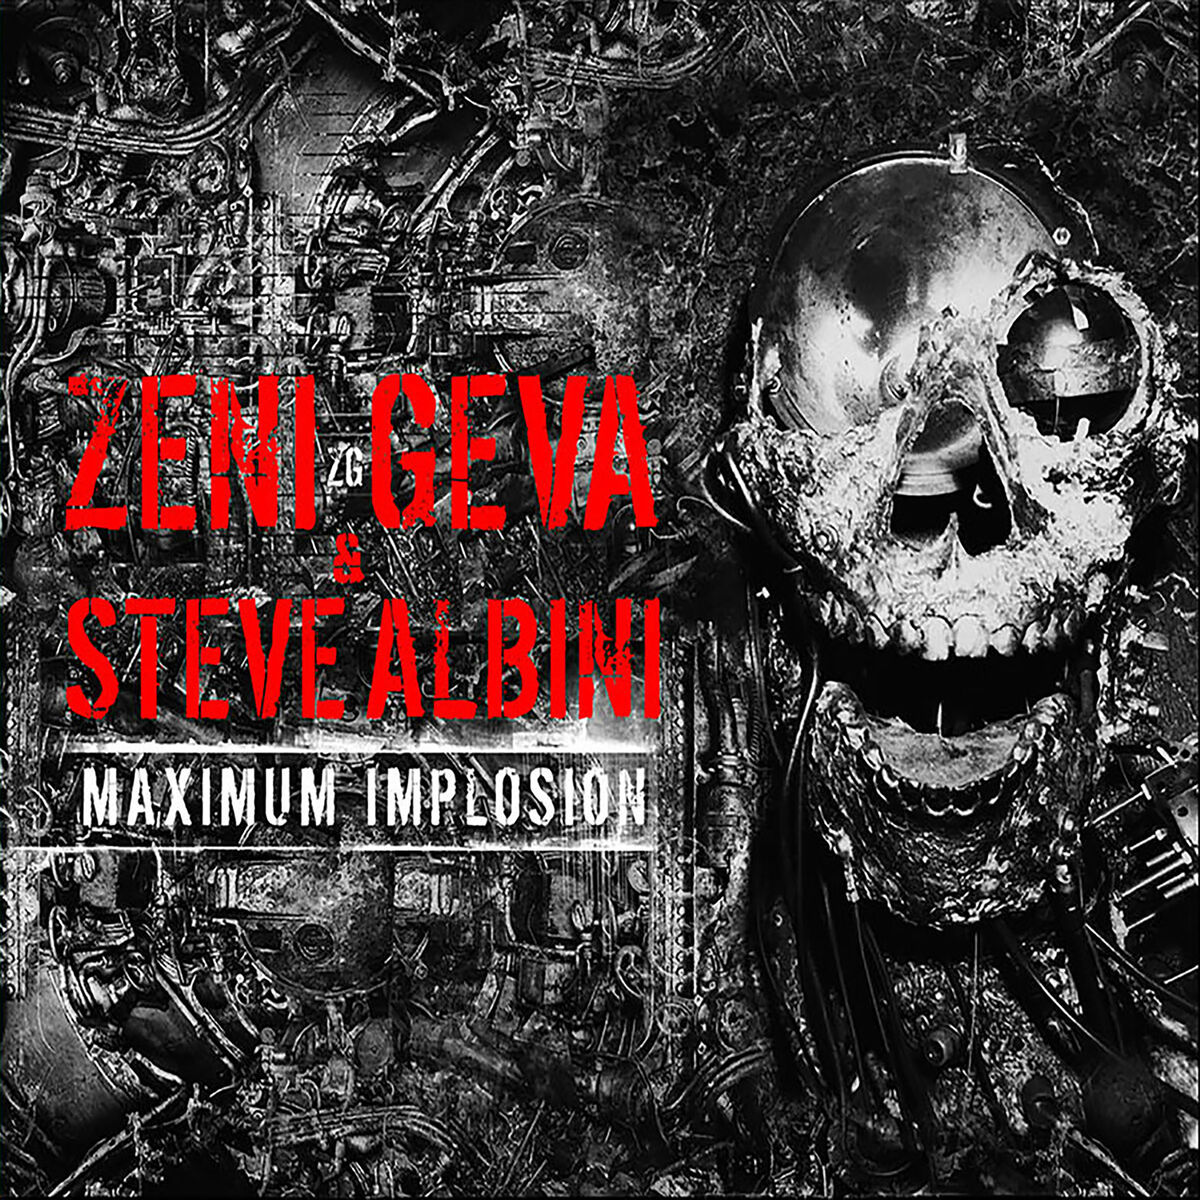 Zeni Geva: albums, songs, playlists | Listen on Deezer